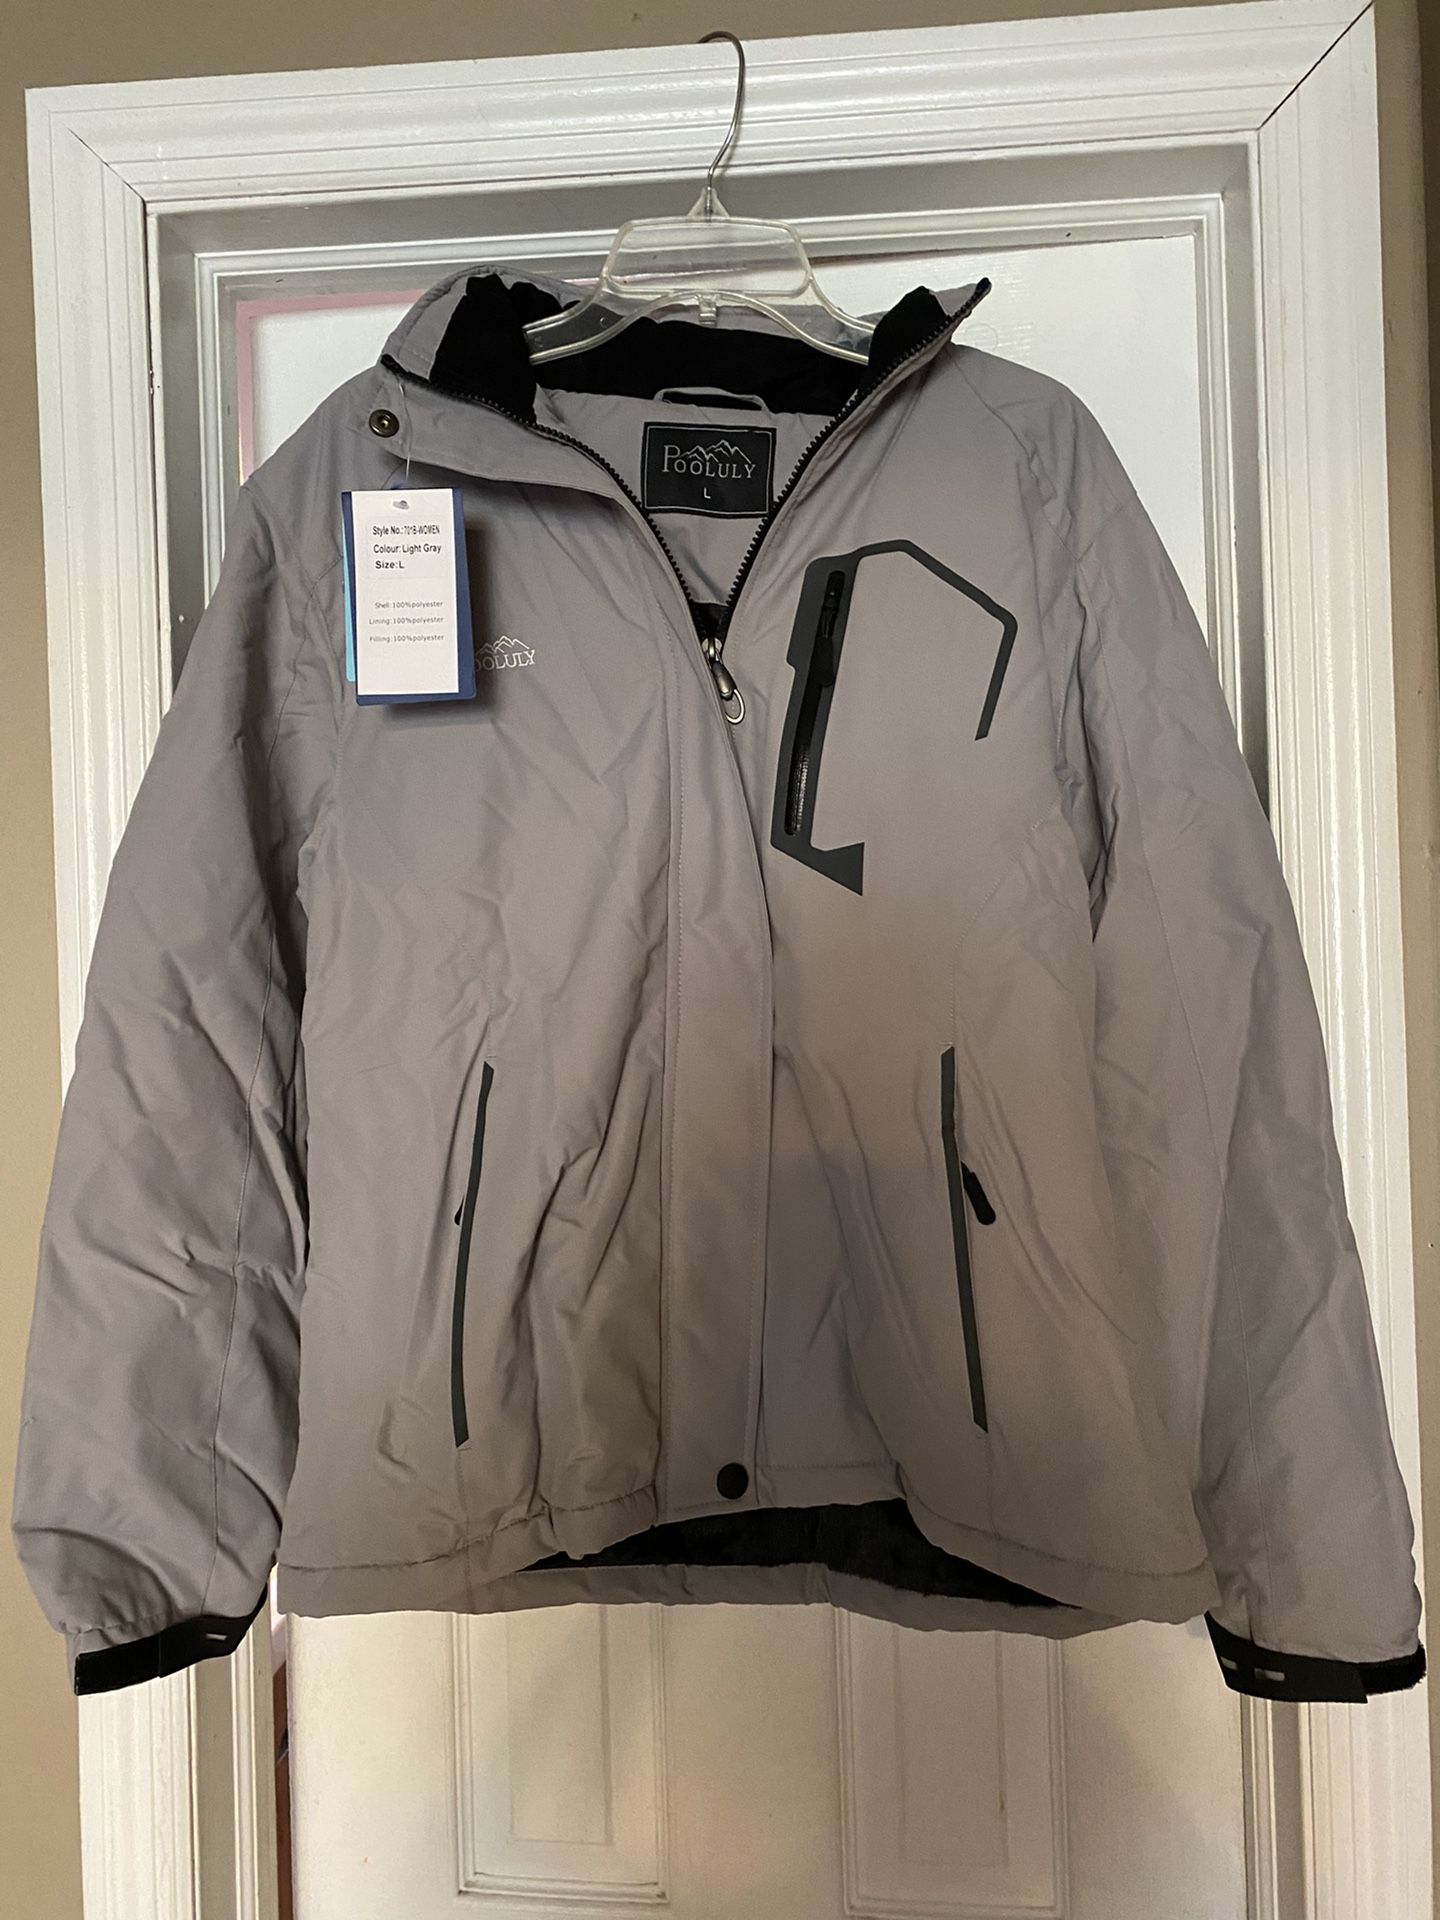 Pooluly Women's Ski Jacket Warm Winter Waterproof Hooded Raincoat Jackets L & XL light gray